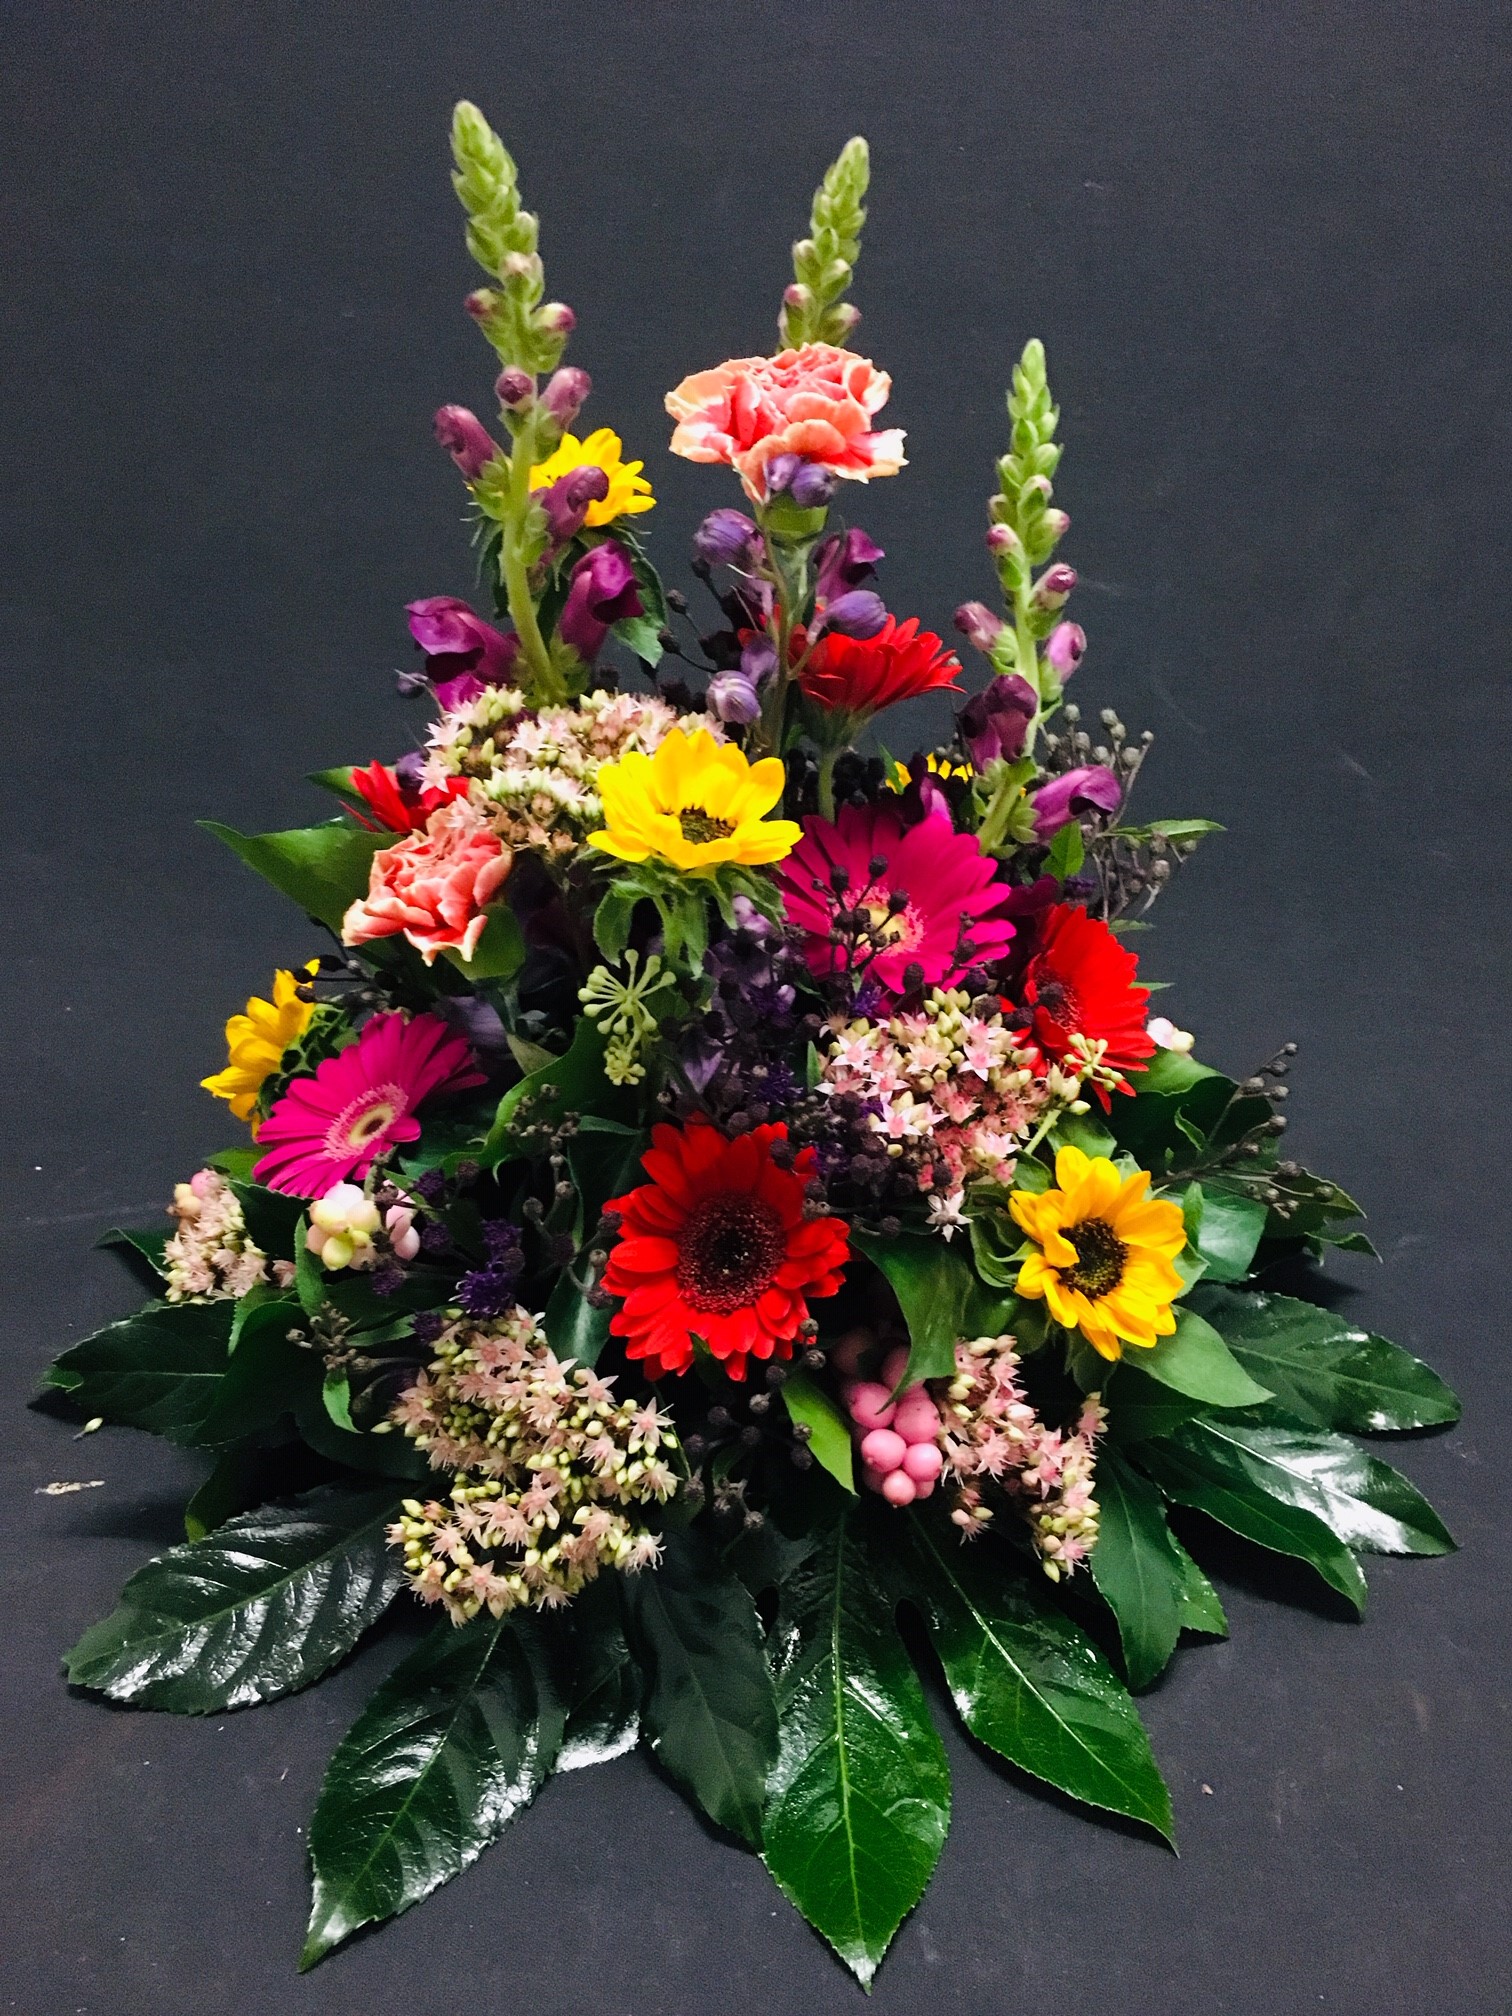 Rouw Millefleur met diverse kleuren bloemen